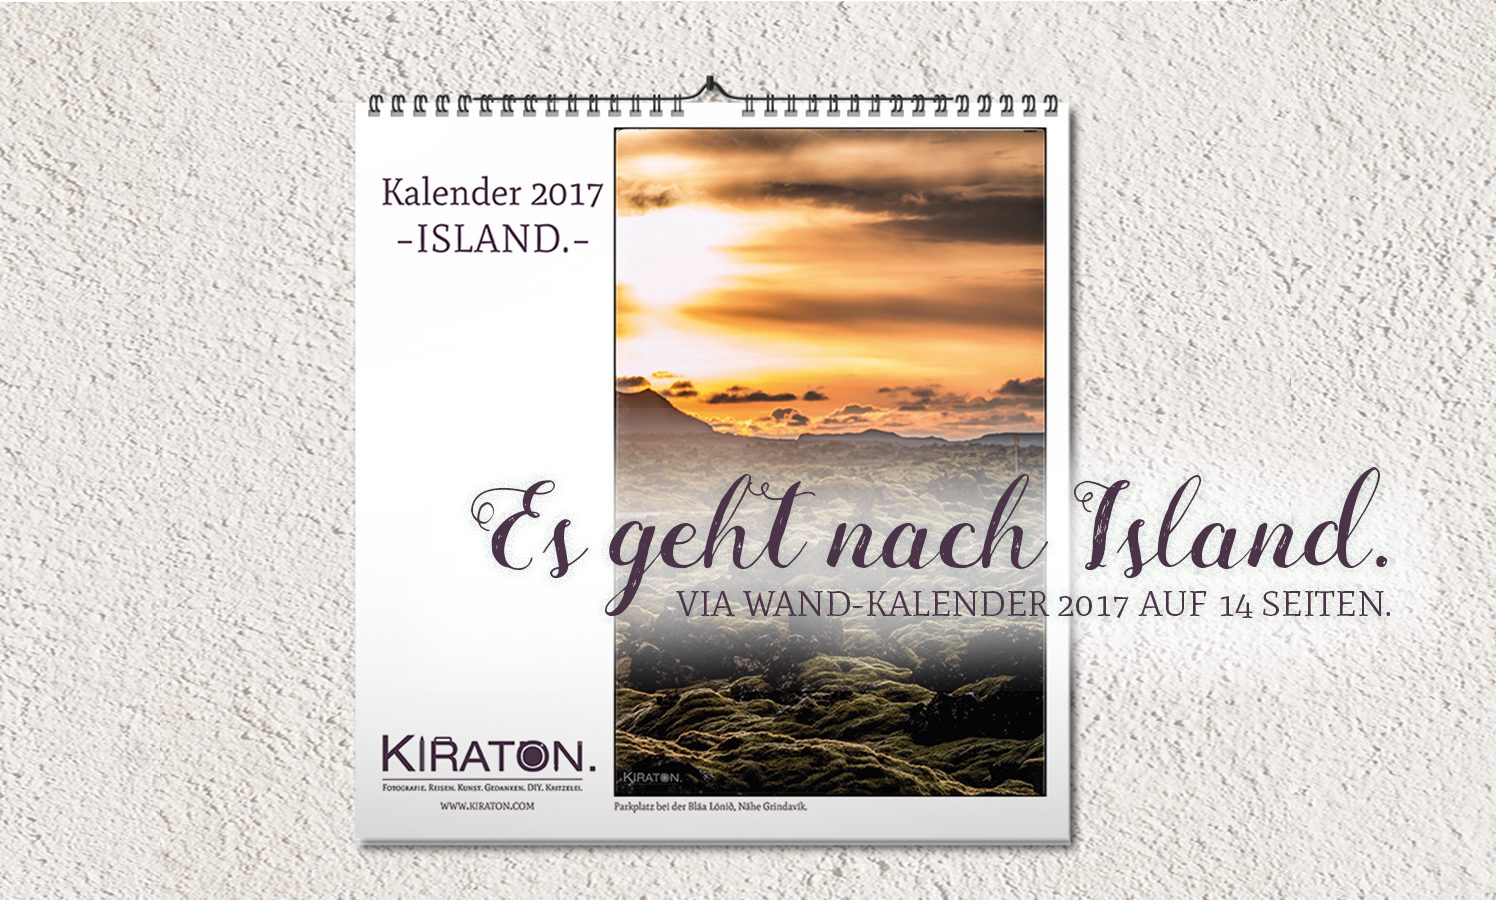 Es geht nach Island – via Wand-Kalender 2017 auf 14 Seiten.